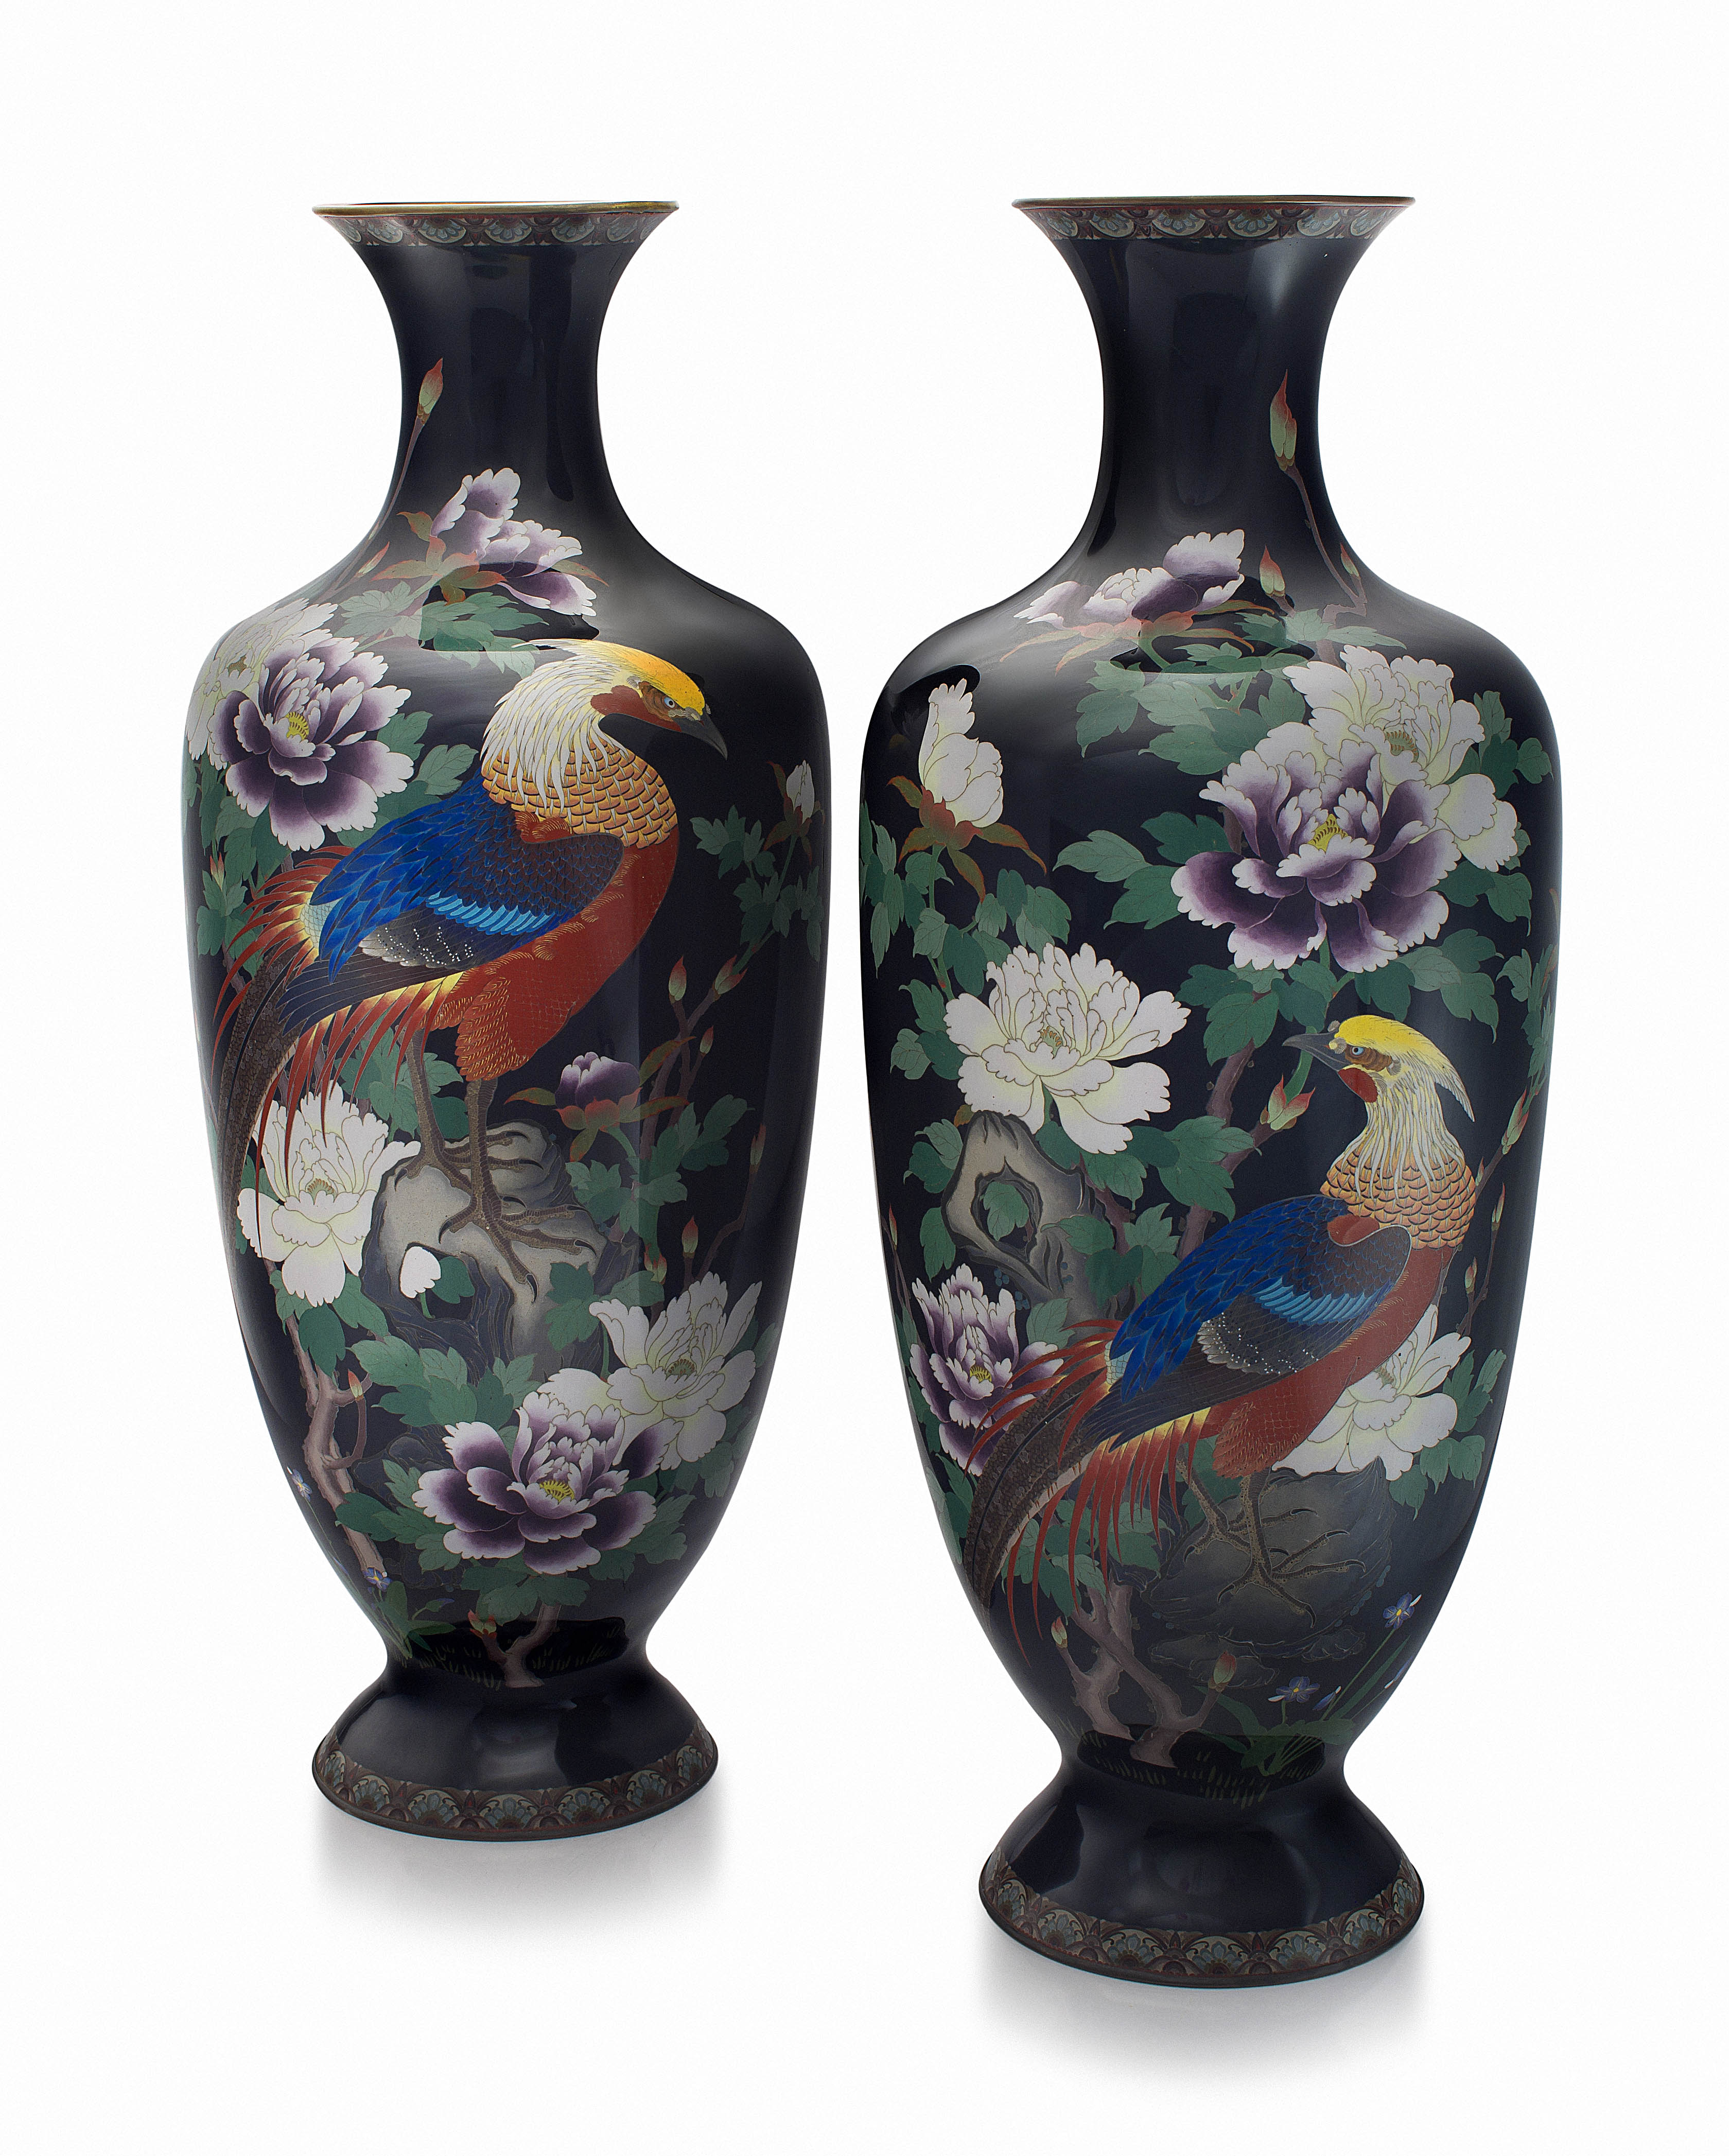 A pair of large Japanese cloisonné enamel vases, Meiji period, 1868-1912